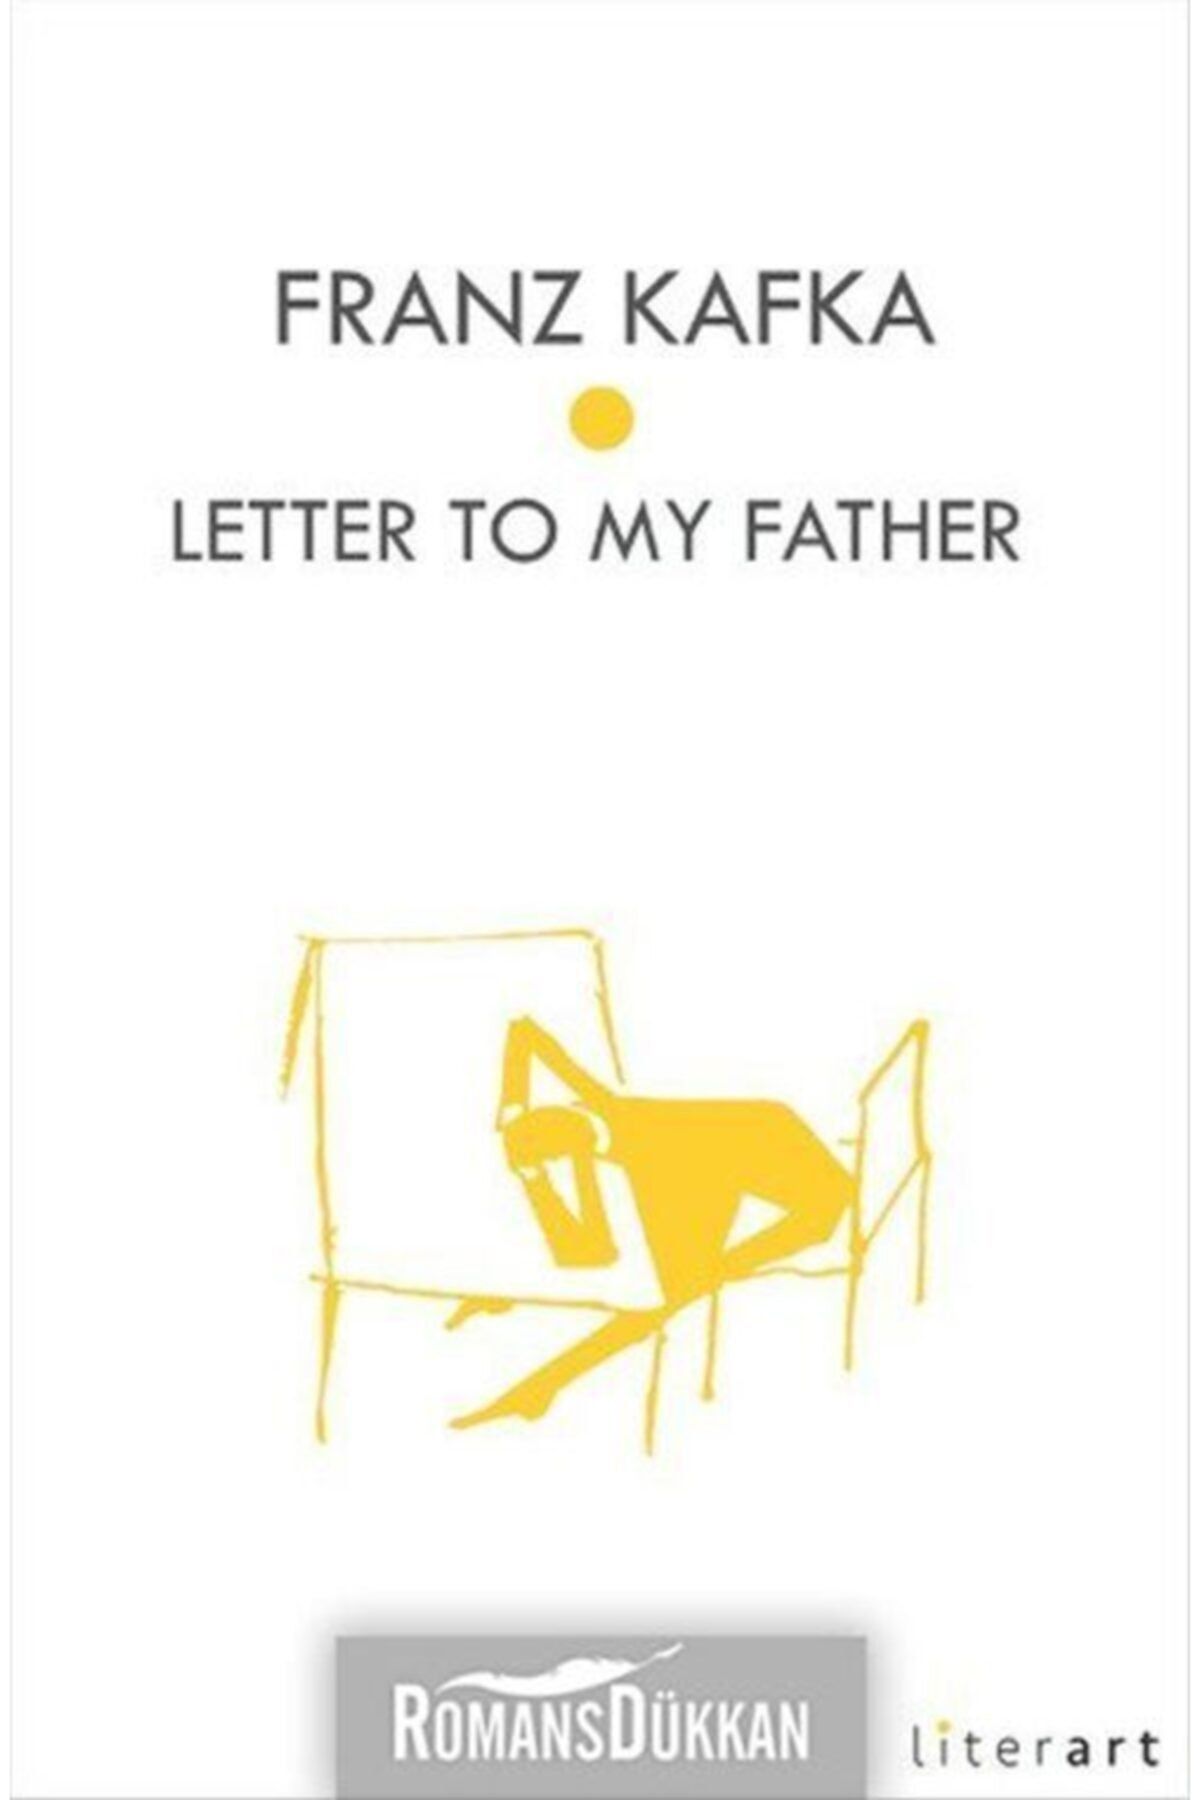 Literart Yayınları Letter To My Father -franzkafka - Franz Kafka